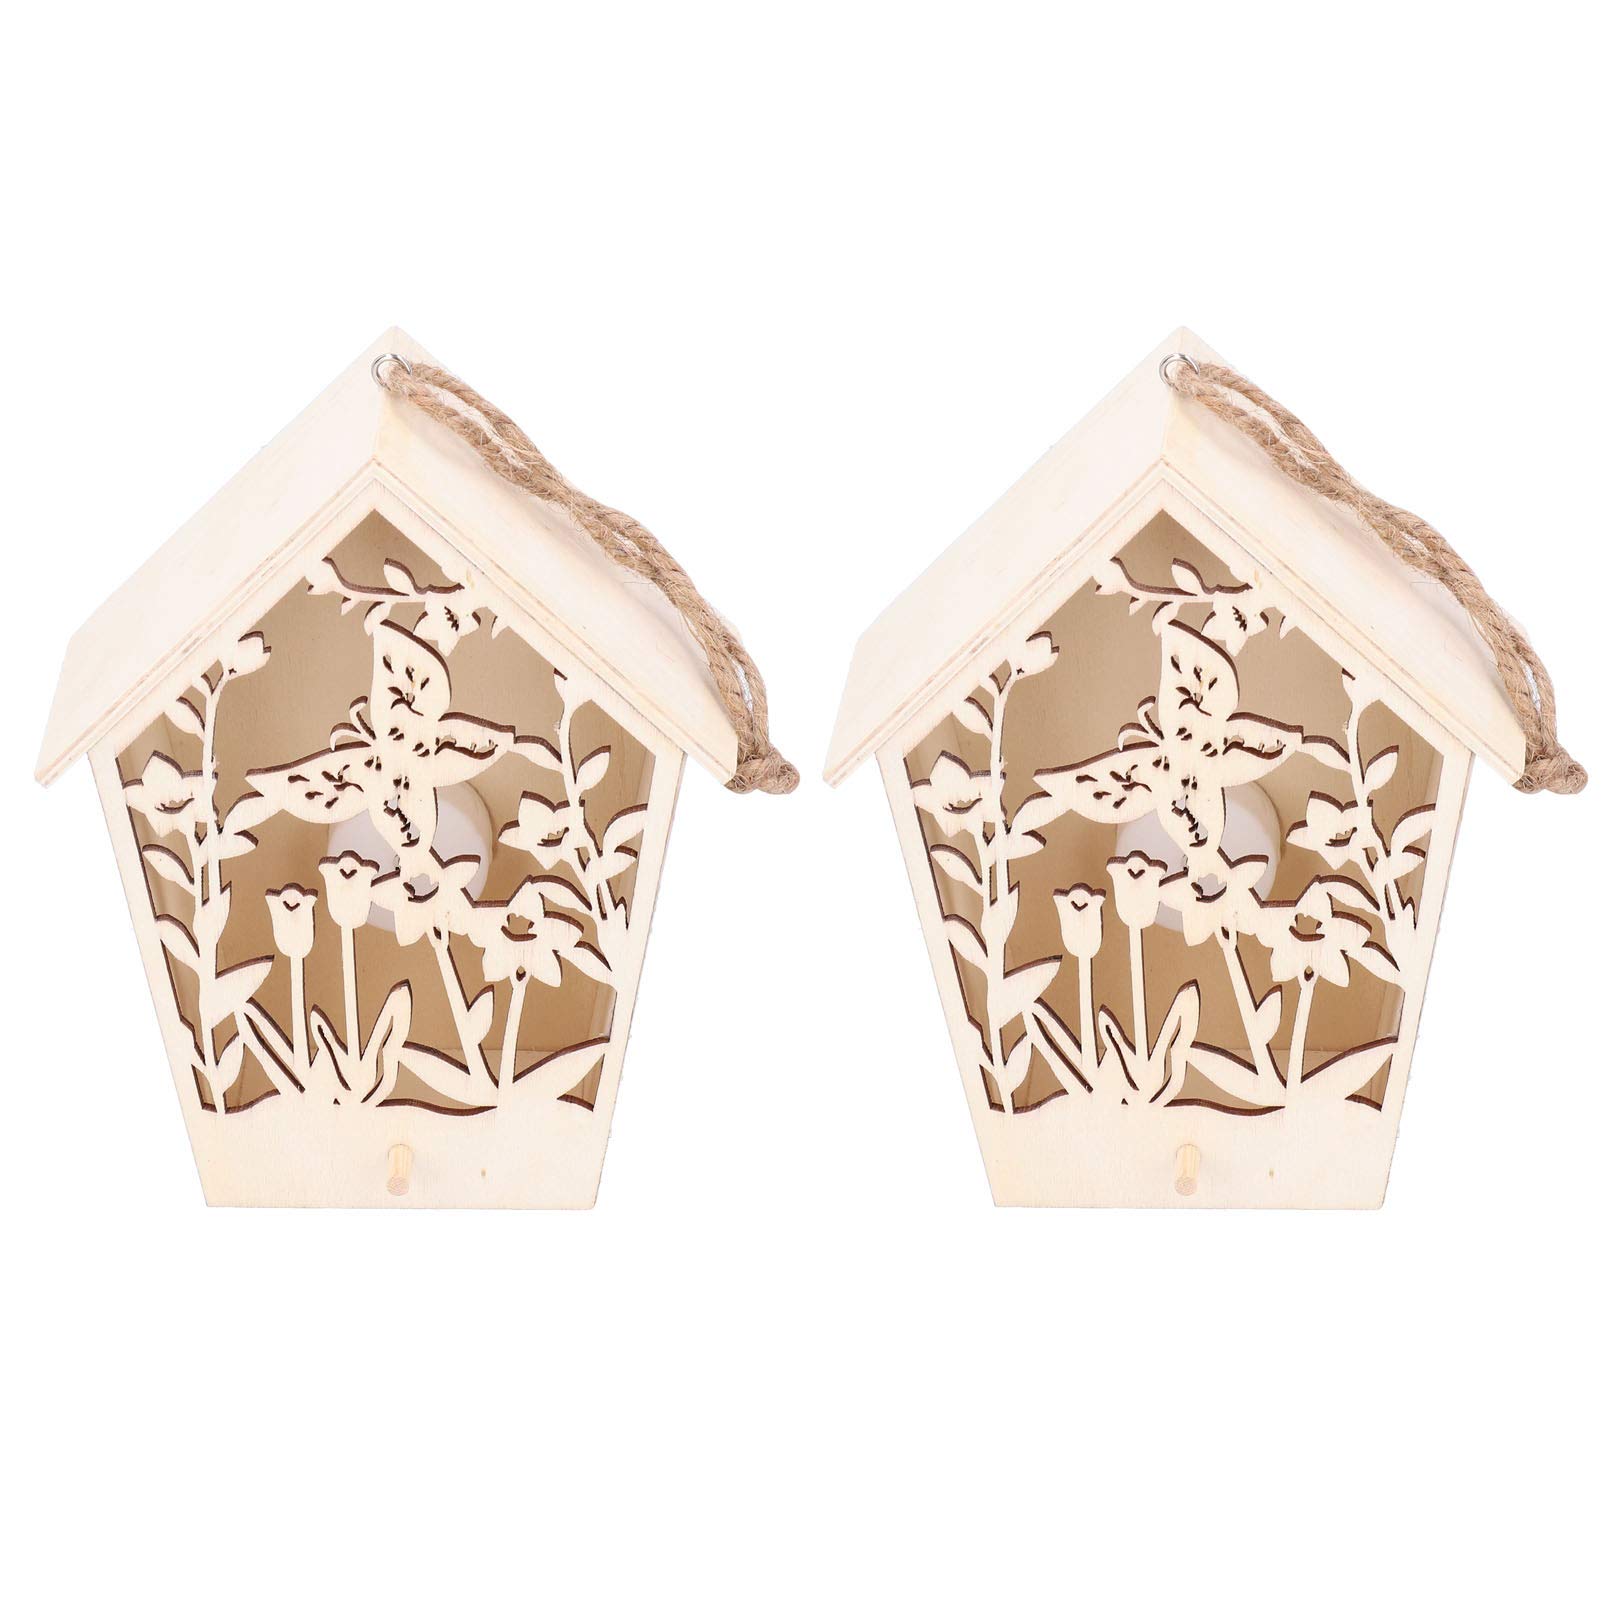 Vogelhaus aus Holz, 2 Stück, Vogelhaus aus Holz, für drinnen und draußen, Dekoration, Garten, Vogelhaus mit warmem Licht, Holzornamente